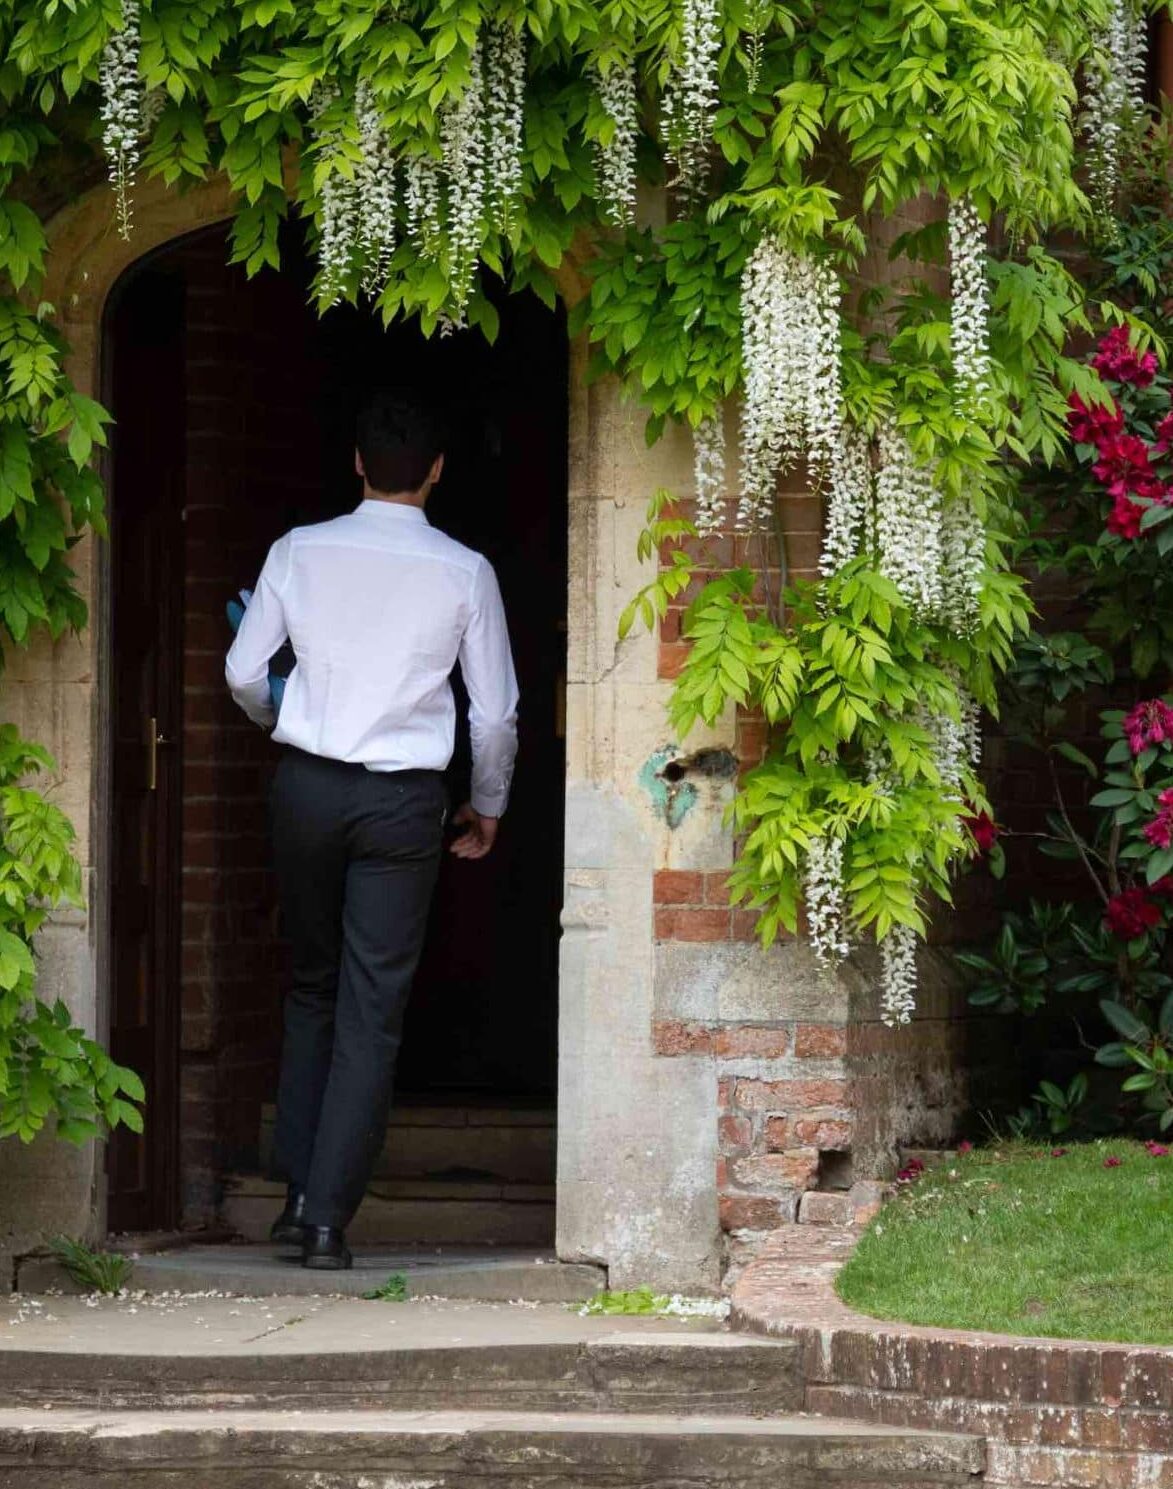 Boy walking through flowered doorway at Radley College